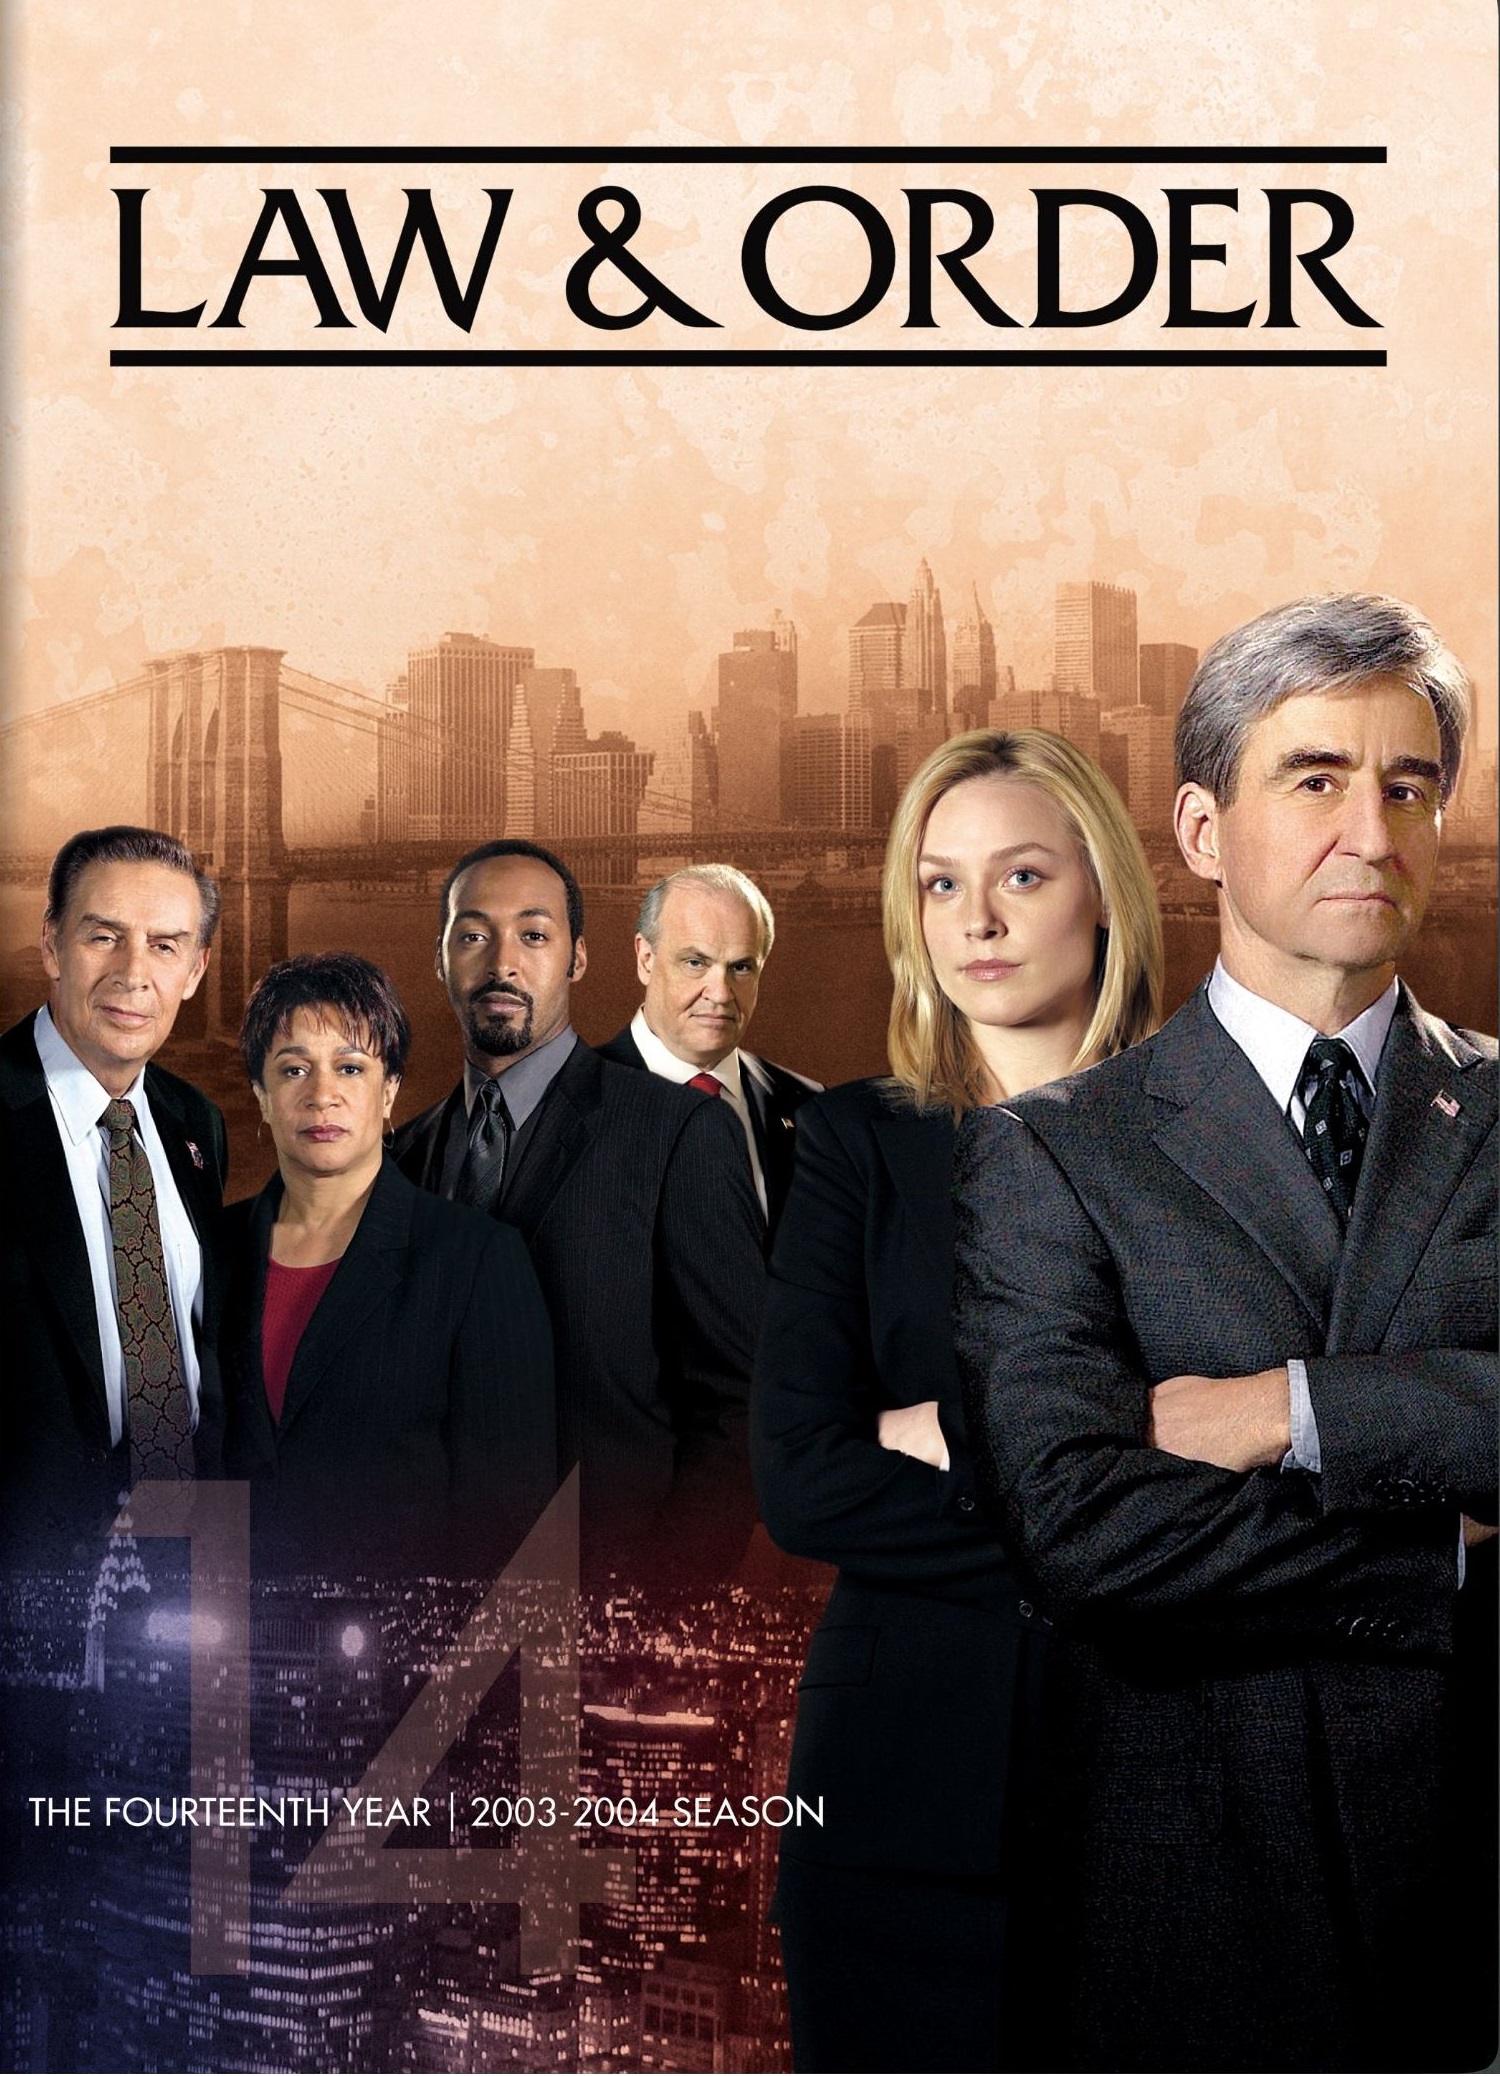 Lu0026O Season 14 | Law and Order | Fandom